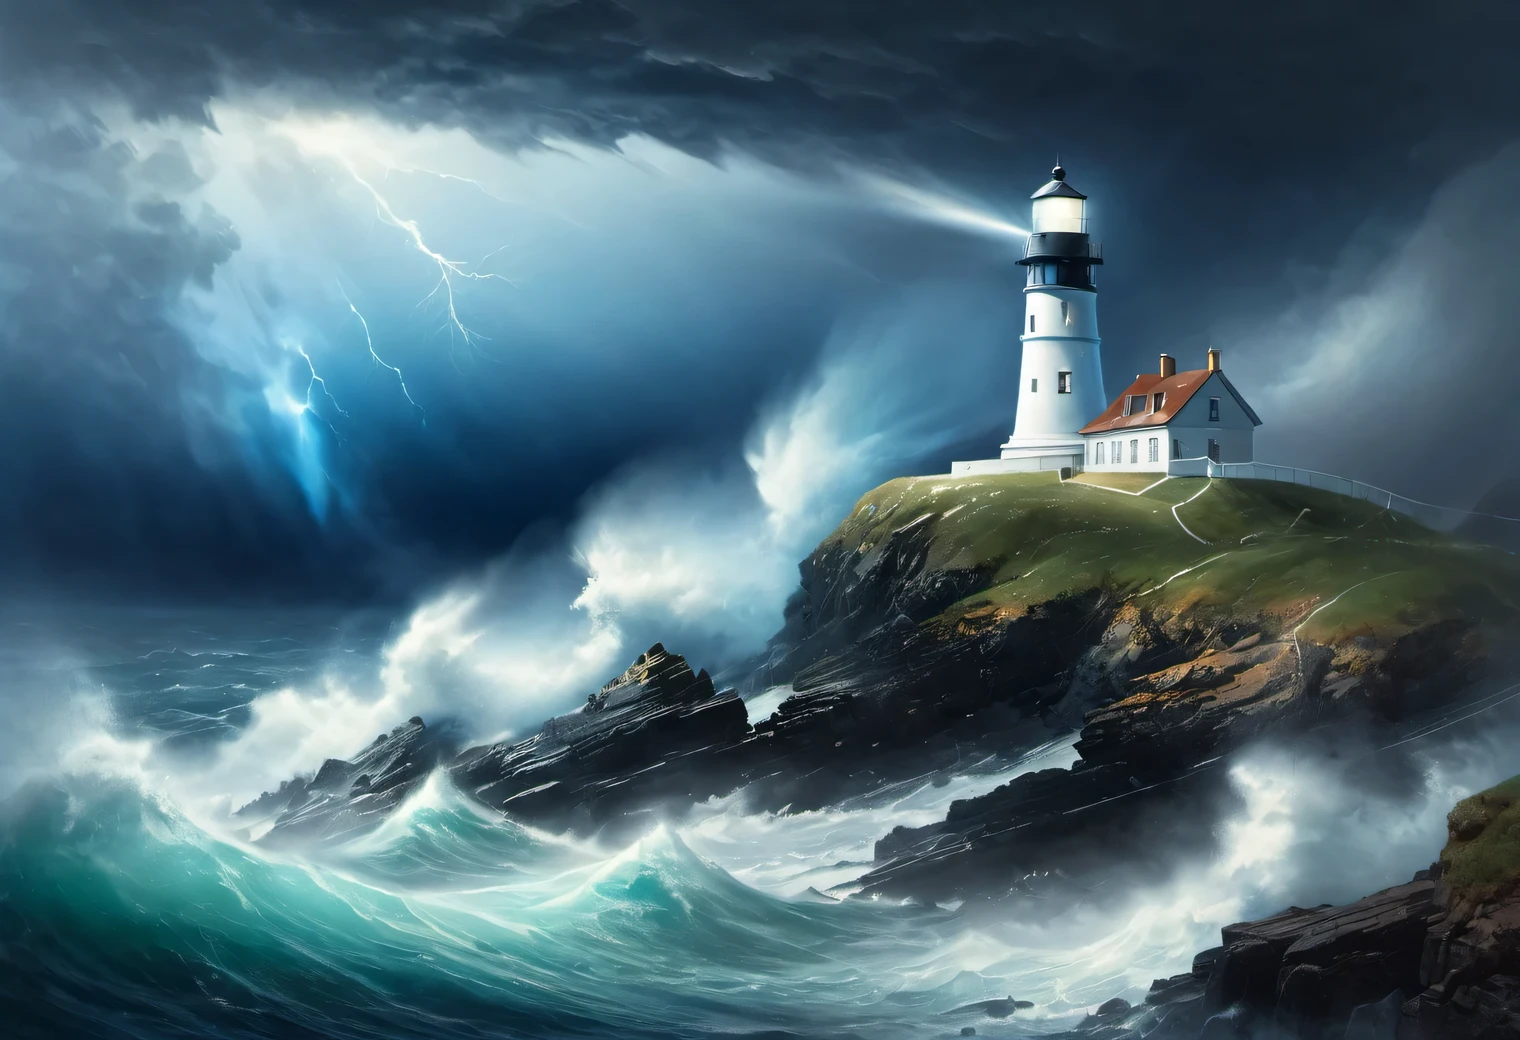 (ศิลปะแสงสีเขียวเข้ม:1.7050), Realistic painting in dark พายุy tones, (sea พายุ fog: 1.2), (ลมพัดพาสเปรย์ทะเลและโฟม:1.7), the dark พายุy sky is illuminated by the pale light of a lighthouse, (เอฟเฟกต์การสัมผัสสองครั้ง:1.5), (1 ประภาคารบนขอบหน้าผา:1.5 เรืองแสงพร้อมรังสีสีฟ้าสดใส: 1.3505), (พายุy sea: 1.755), แข็งแกร่ง (พายุ: 1.3050), แข็งแกร่ง winds:1.250), ไฮไลท์สีฟ้า, (เรย์ เทรซซิ่ง: 1.2), (ทินดอลล์เอฟเฟ็กต์: 1.คานประภาคาร 4055:1.4), รายละเอียดสูง, พายุ haze, พื้นผิวเรียบ, โครงร่างเบลอ, พายุ palette, อีวาน ไอวาซอฟสกี้, ร่วมกับ (สถิตยศาสตร์: 1.6), (the แข็งแกร่งest พายุ of the century:1.5), (ทัศนวิสัยต่ำ:1.7)